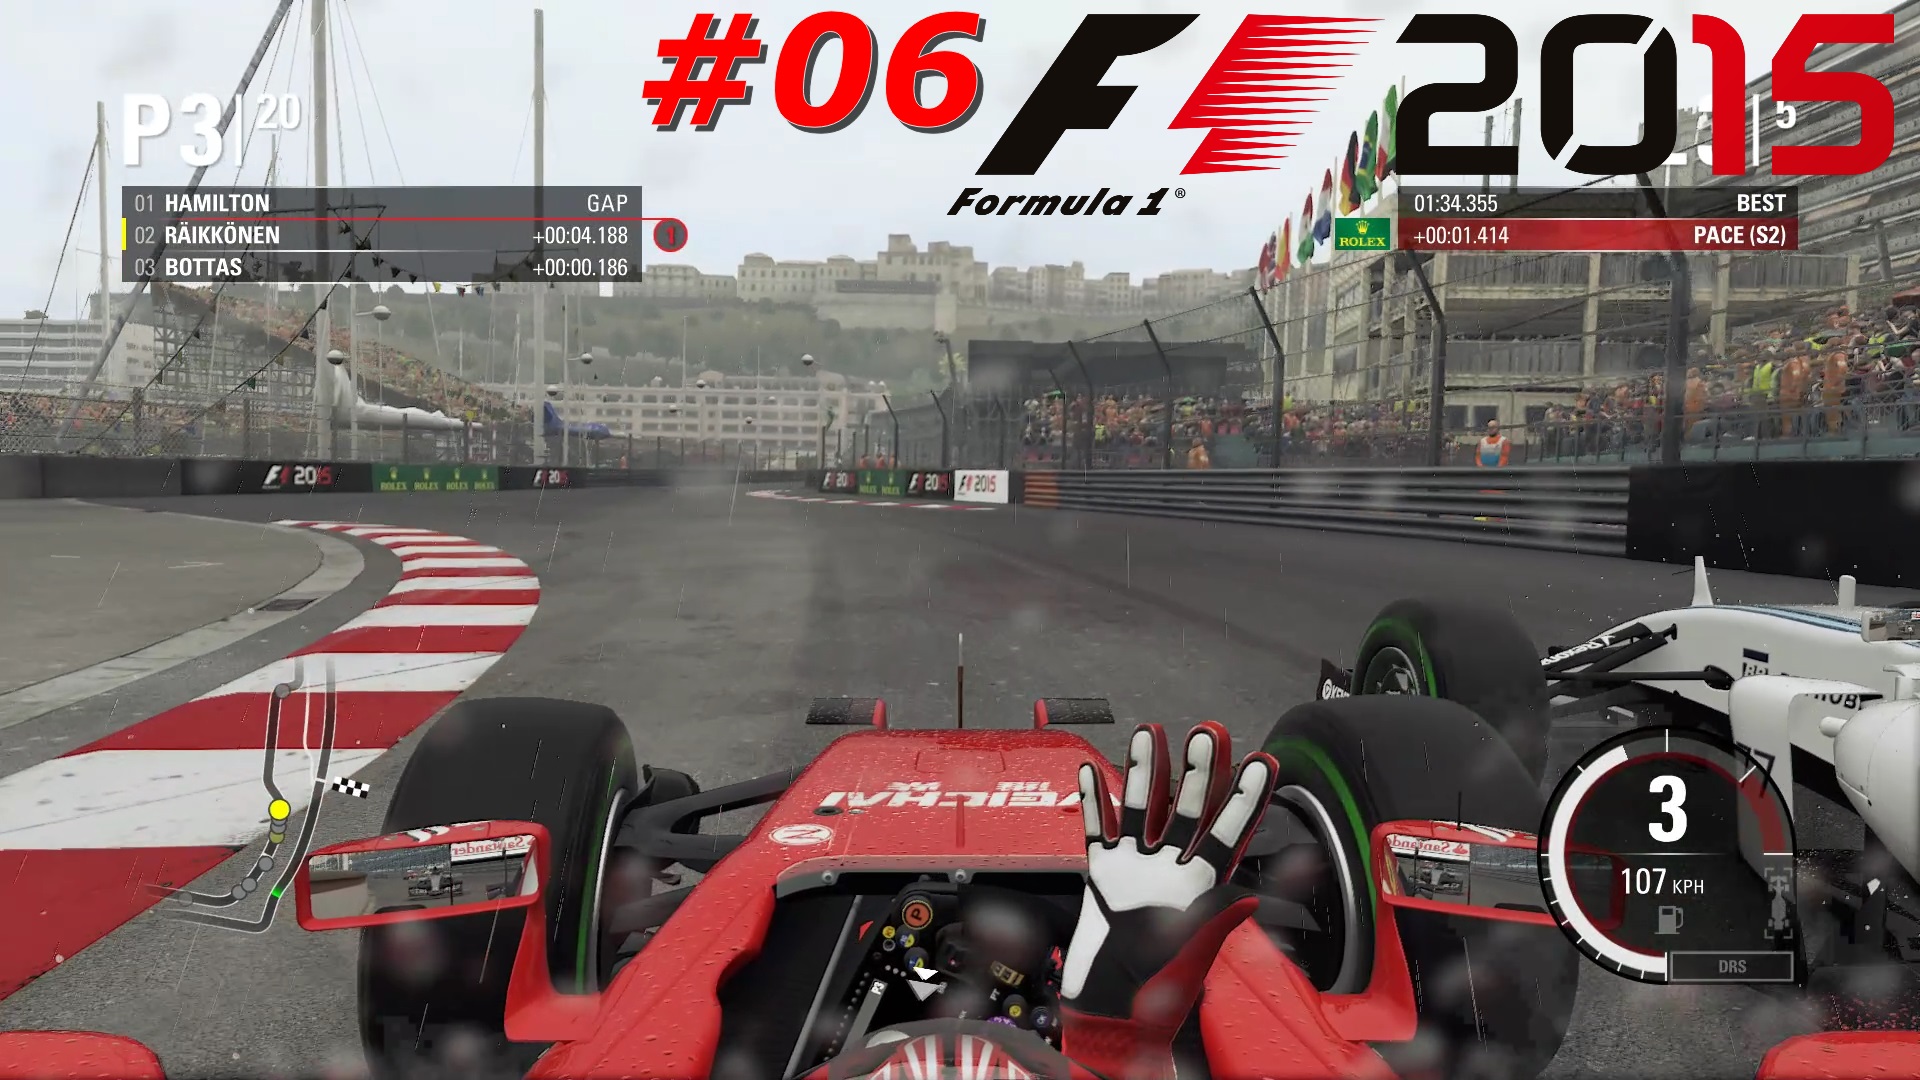 Scuderia Ferrari - #06 Monaco - Удар об ограждение и прокол колеса | F1 2015 | Logitech G29